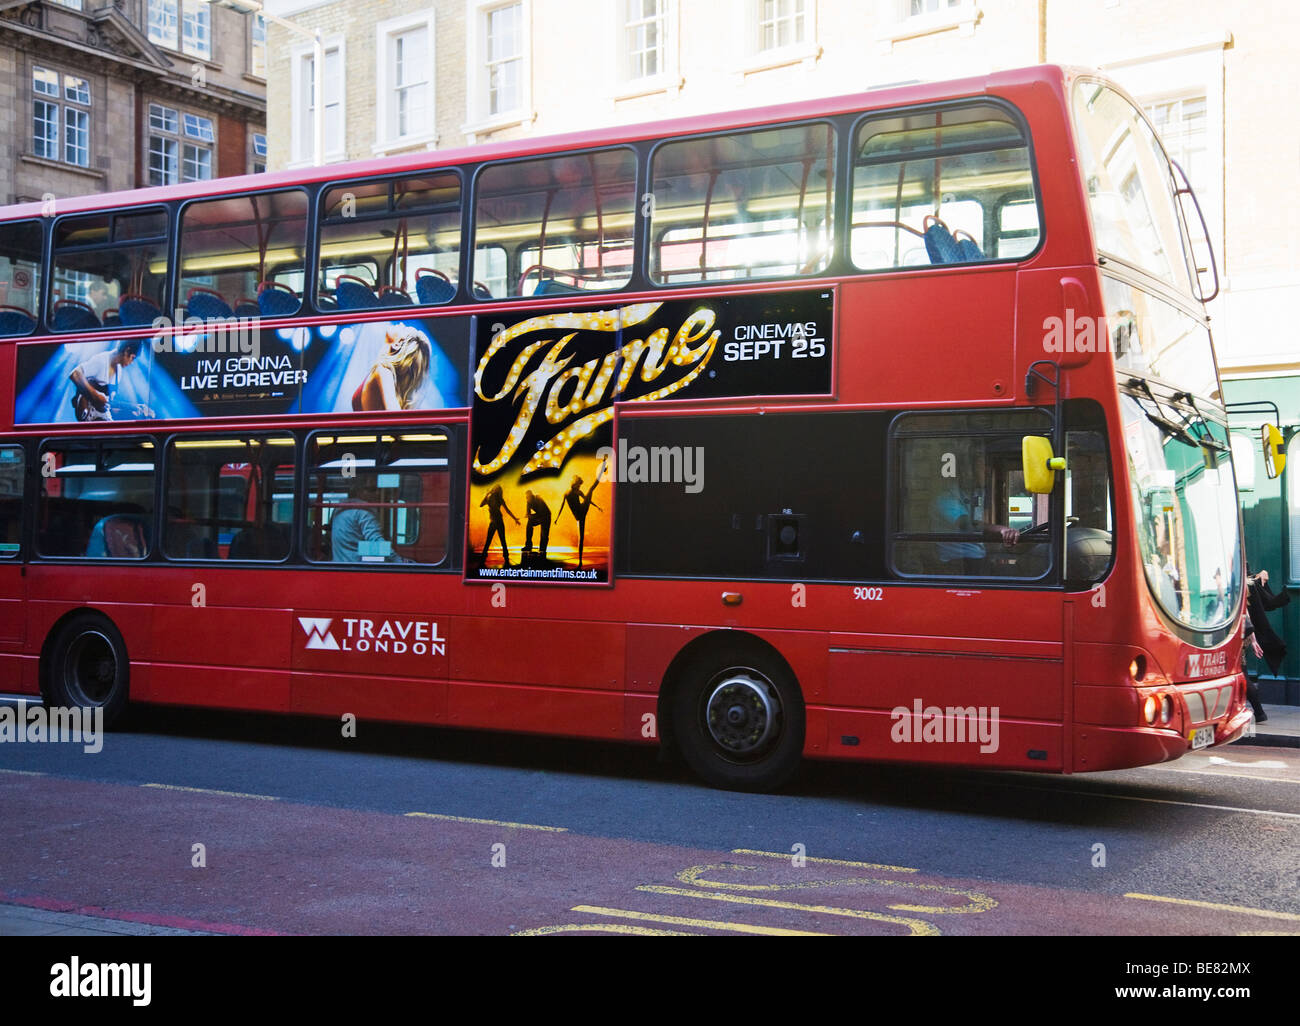 Un bus de Londres rouge la publicité 2009 Film musical, la renommée. Tooley Street, Londres. UK. Banque D'Images